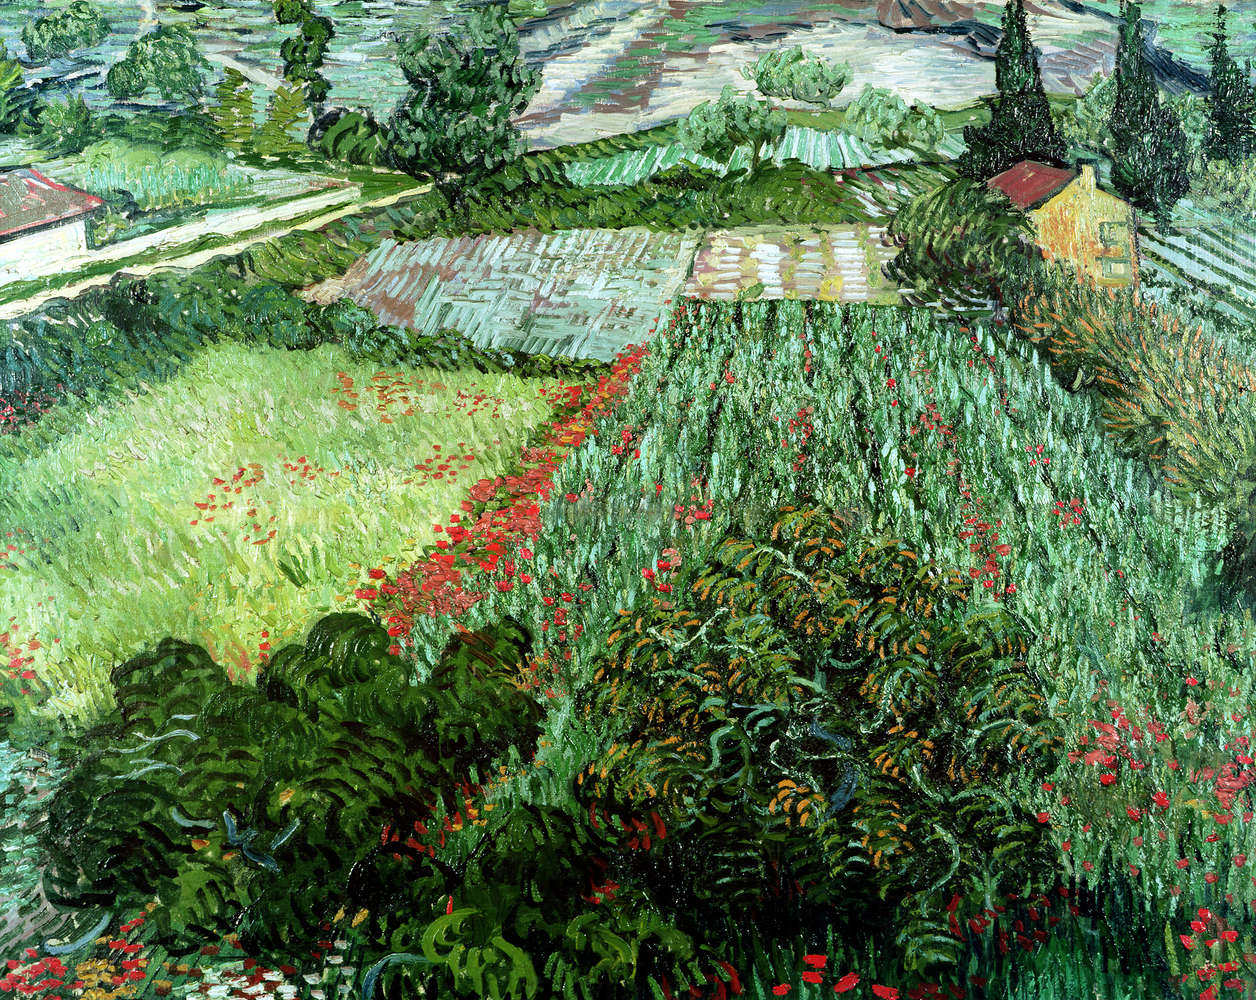             Fototapete "Feld mit Mohnblumen" von Vincent van Gogh
        